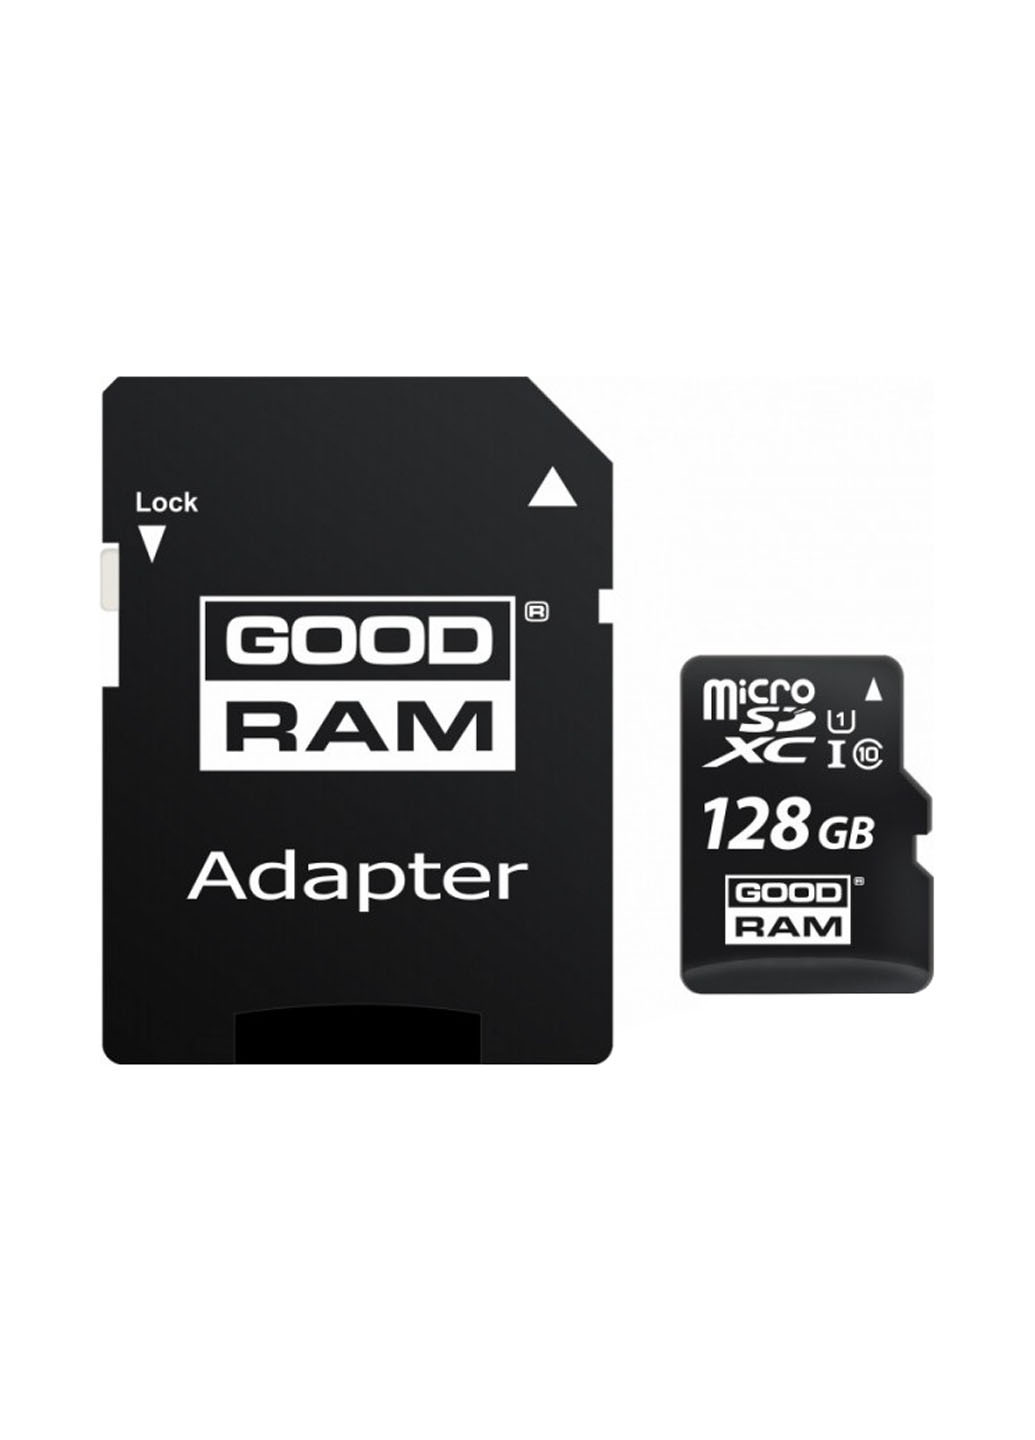 Карта памяти microSDHC 128GB C10 UHS-I + SD-adapter (M1AA-1280R12) Goodram карта памяти goodram microsdhc 128gb c10 uhs-i + sd-adapter (m1aa-1280r12) (136711364)